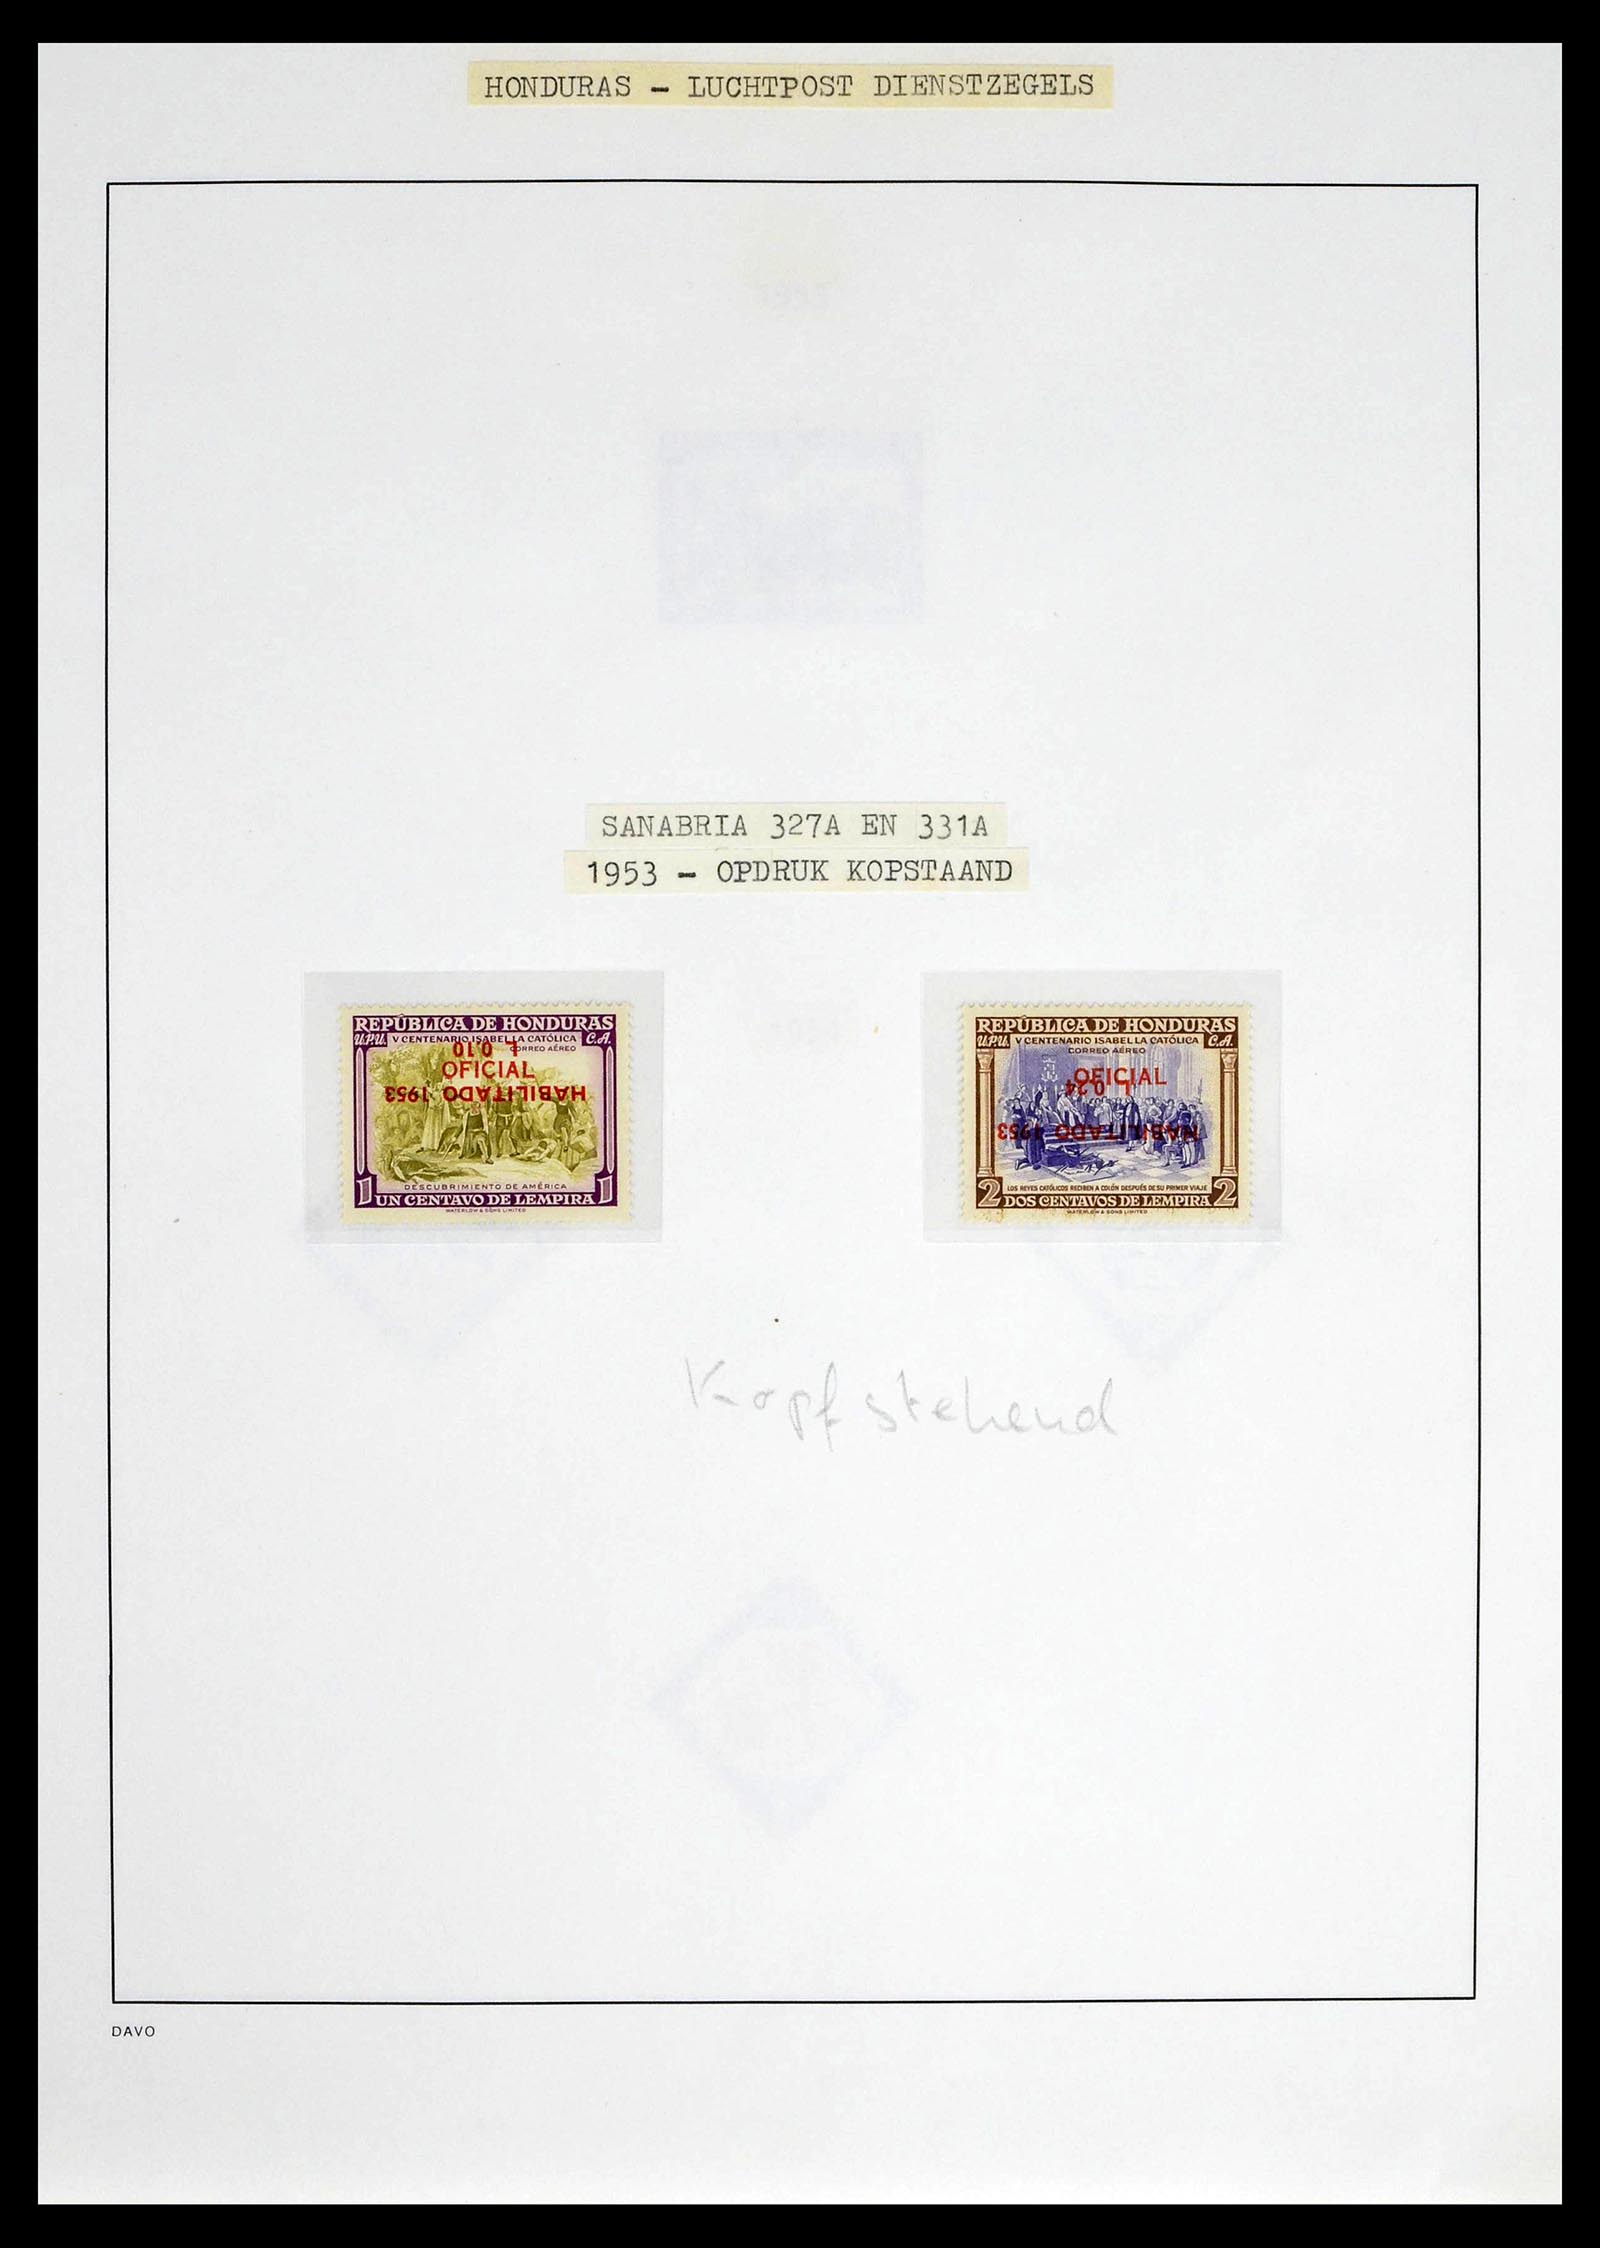 39404 0030 - Postzegelverzameling 39404 Honduras dienstzegels 1890-1974.